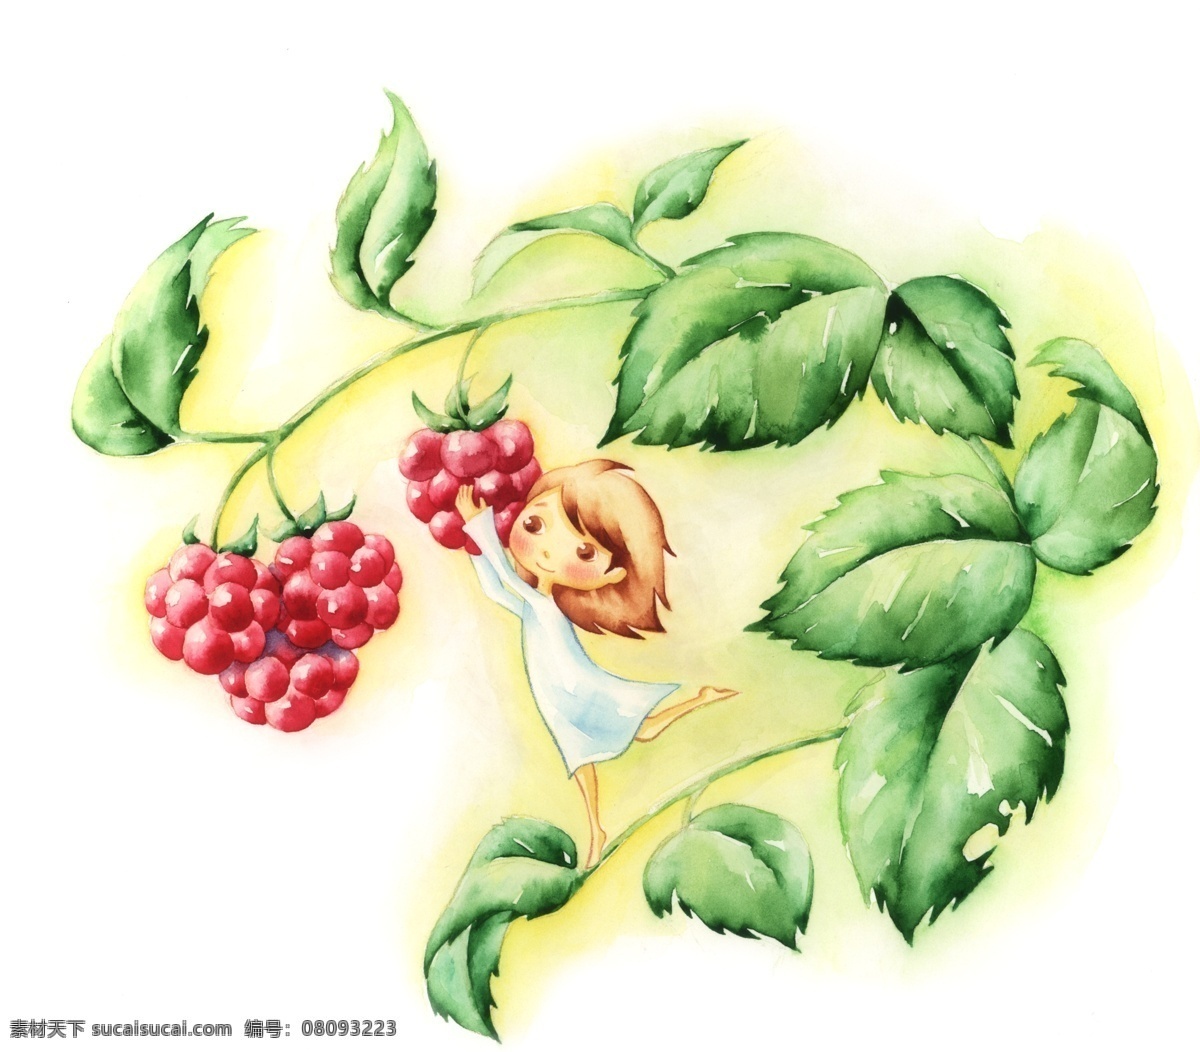 野生 果实 小女孩 psd源文件 彩绘 叶子 植物 野生蛇莓 红色果实 摘果子